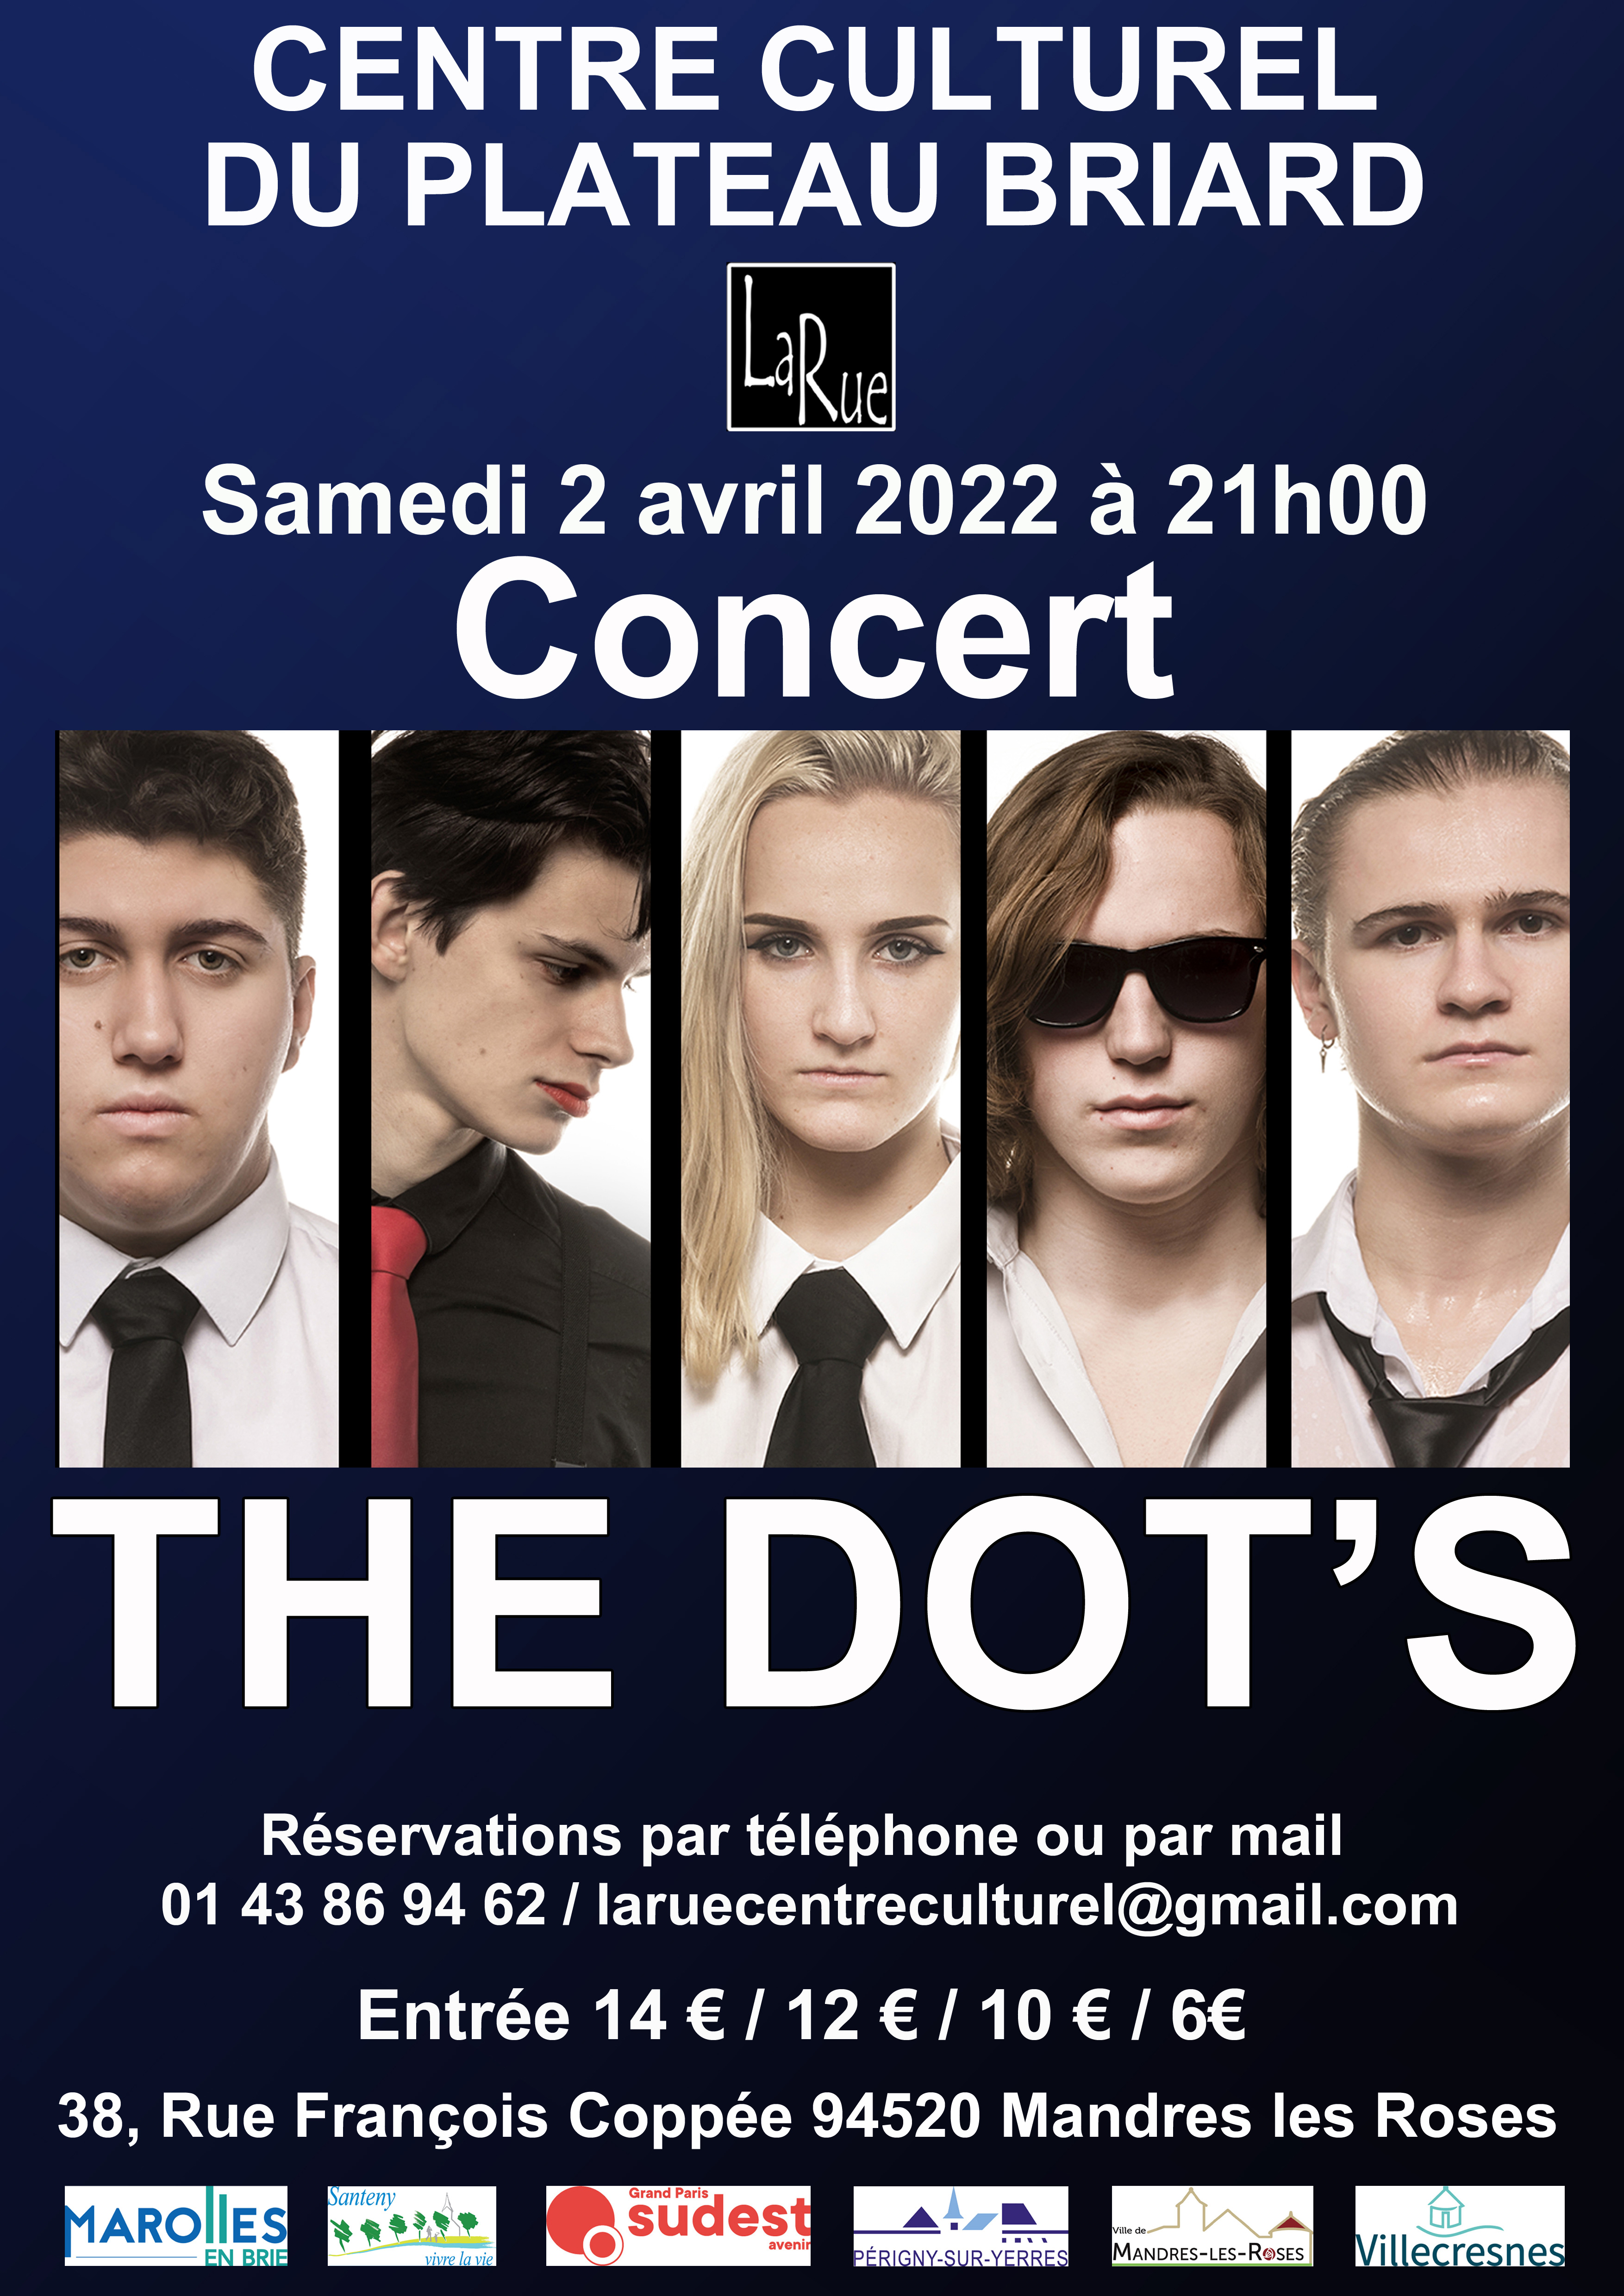 The Dot's, ultime concert avant le Zénith de Paris !